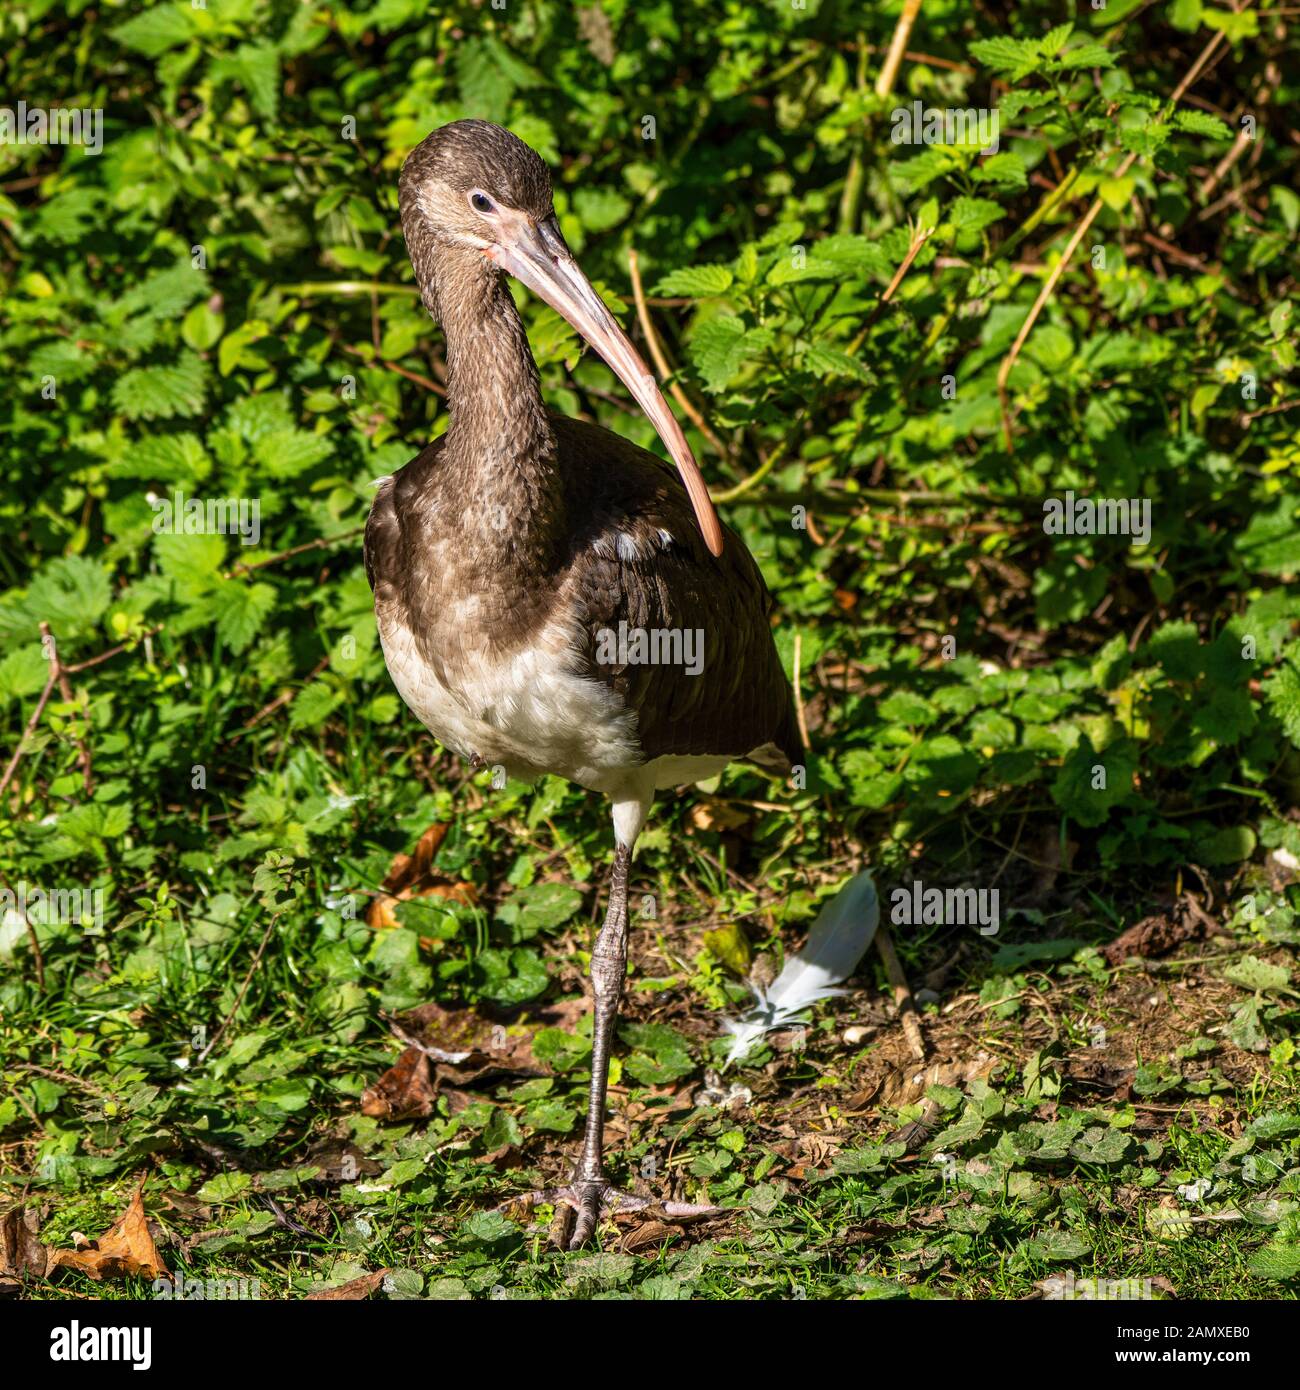 Die Glänzende ibis, Plegadis falcinellus ist ein Planschbecken Vogel in der ibis Familie Threskiornithidae. Stockfoto